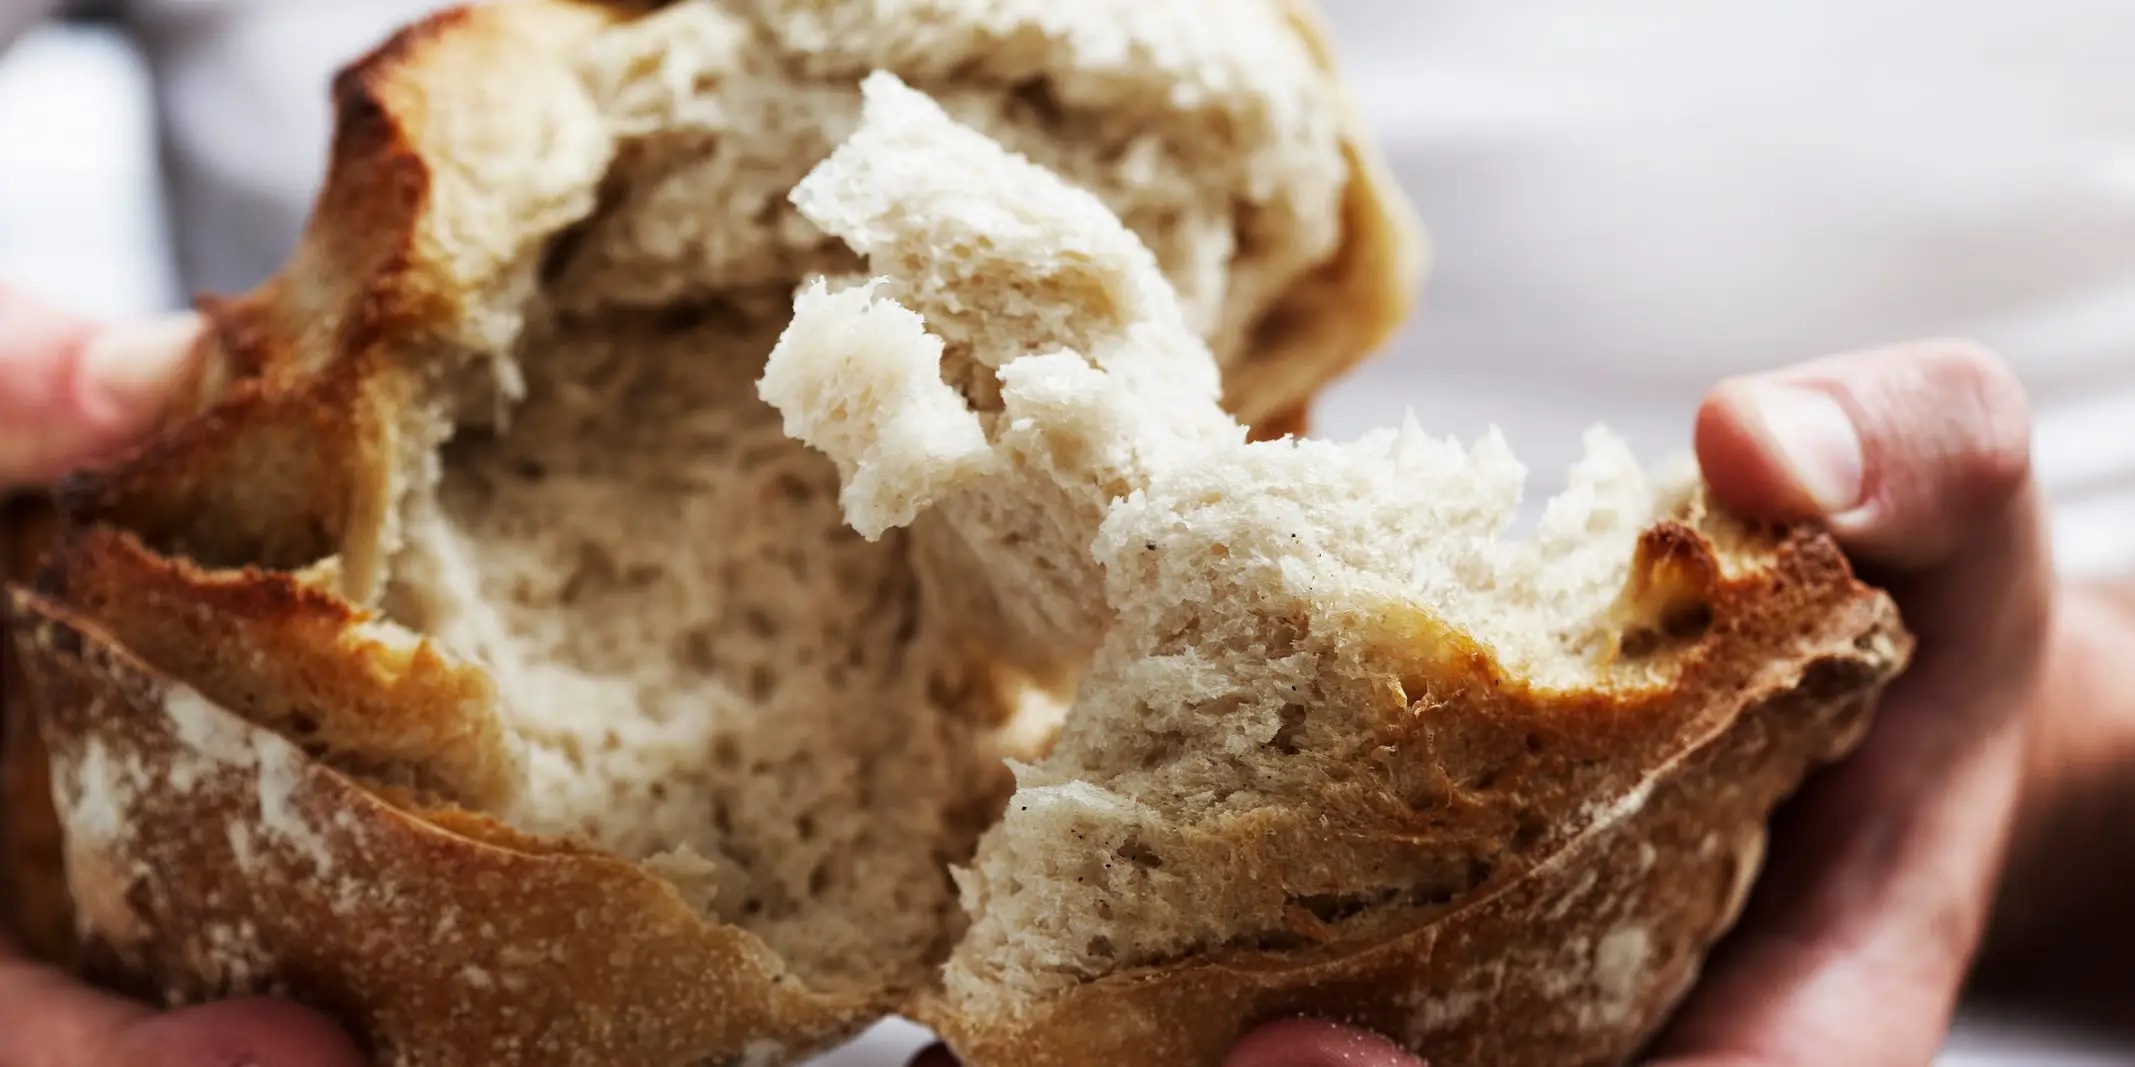 Beneficios de los panes elaborados con cereales integrales